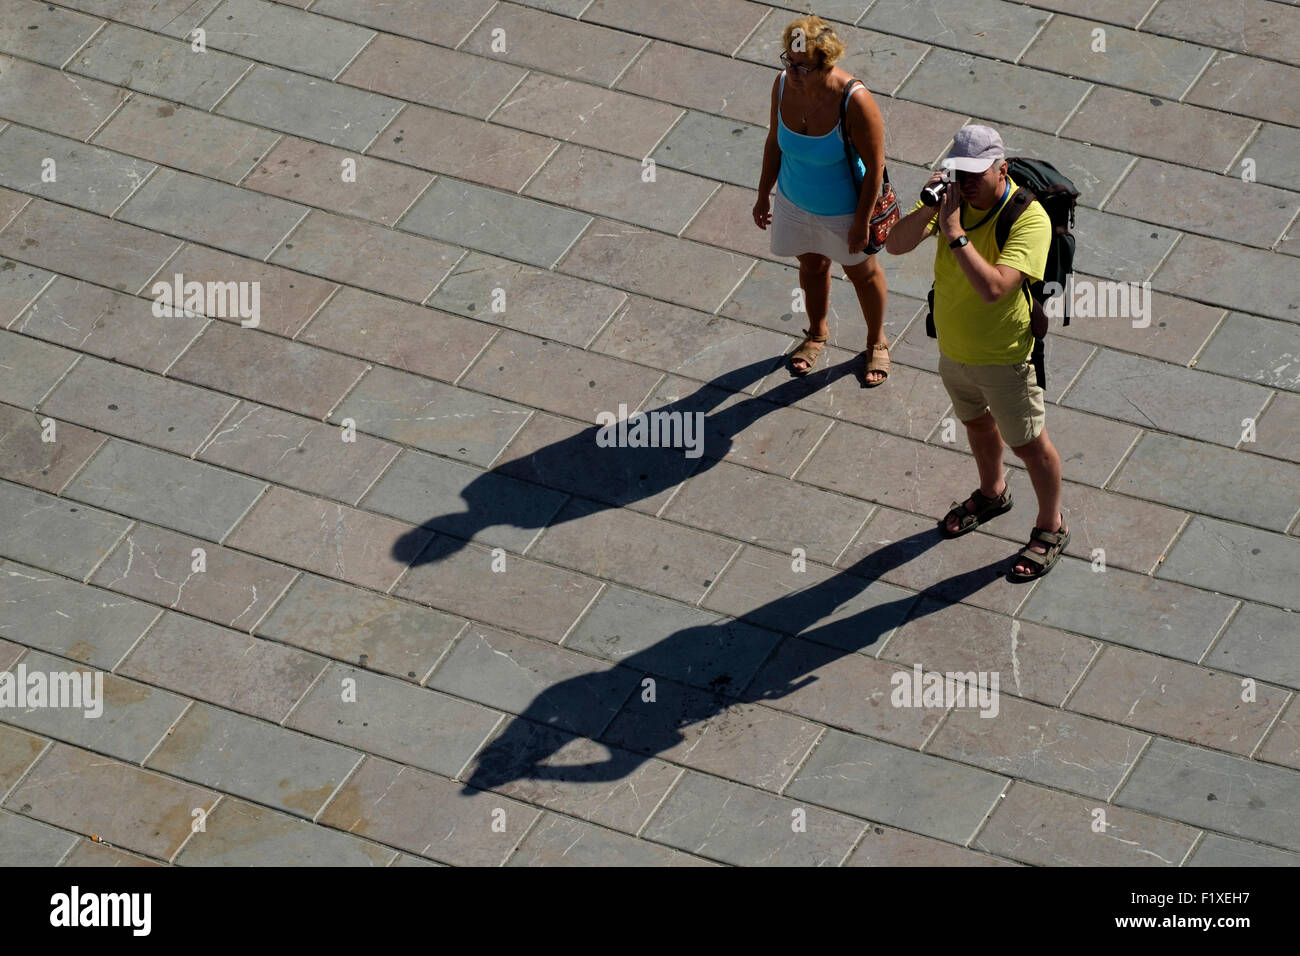 Turista grabando con una cámara portátil de video Foto de stock